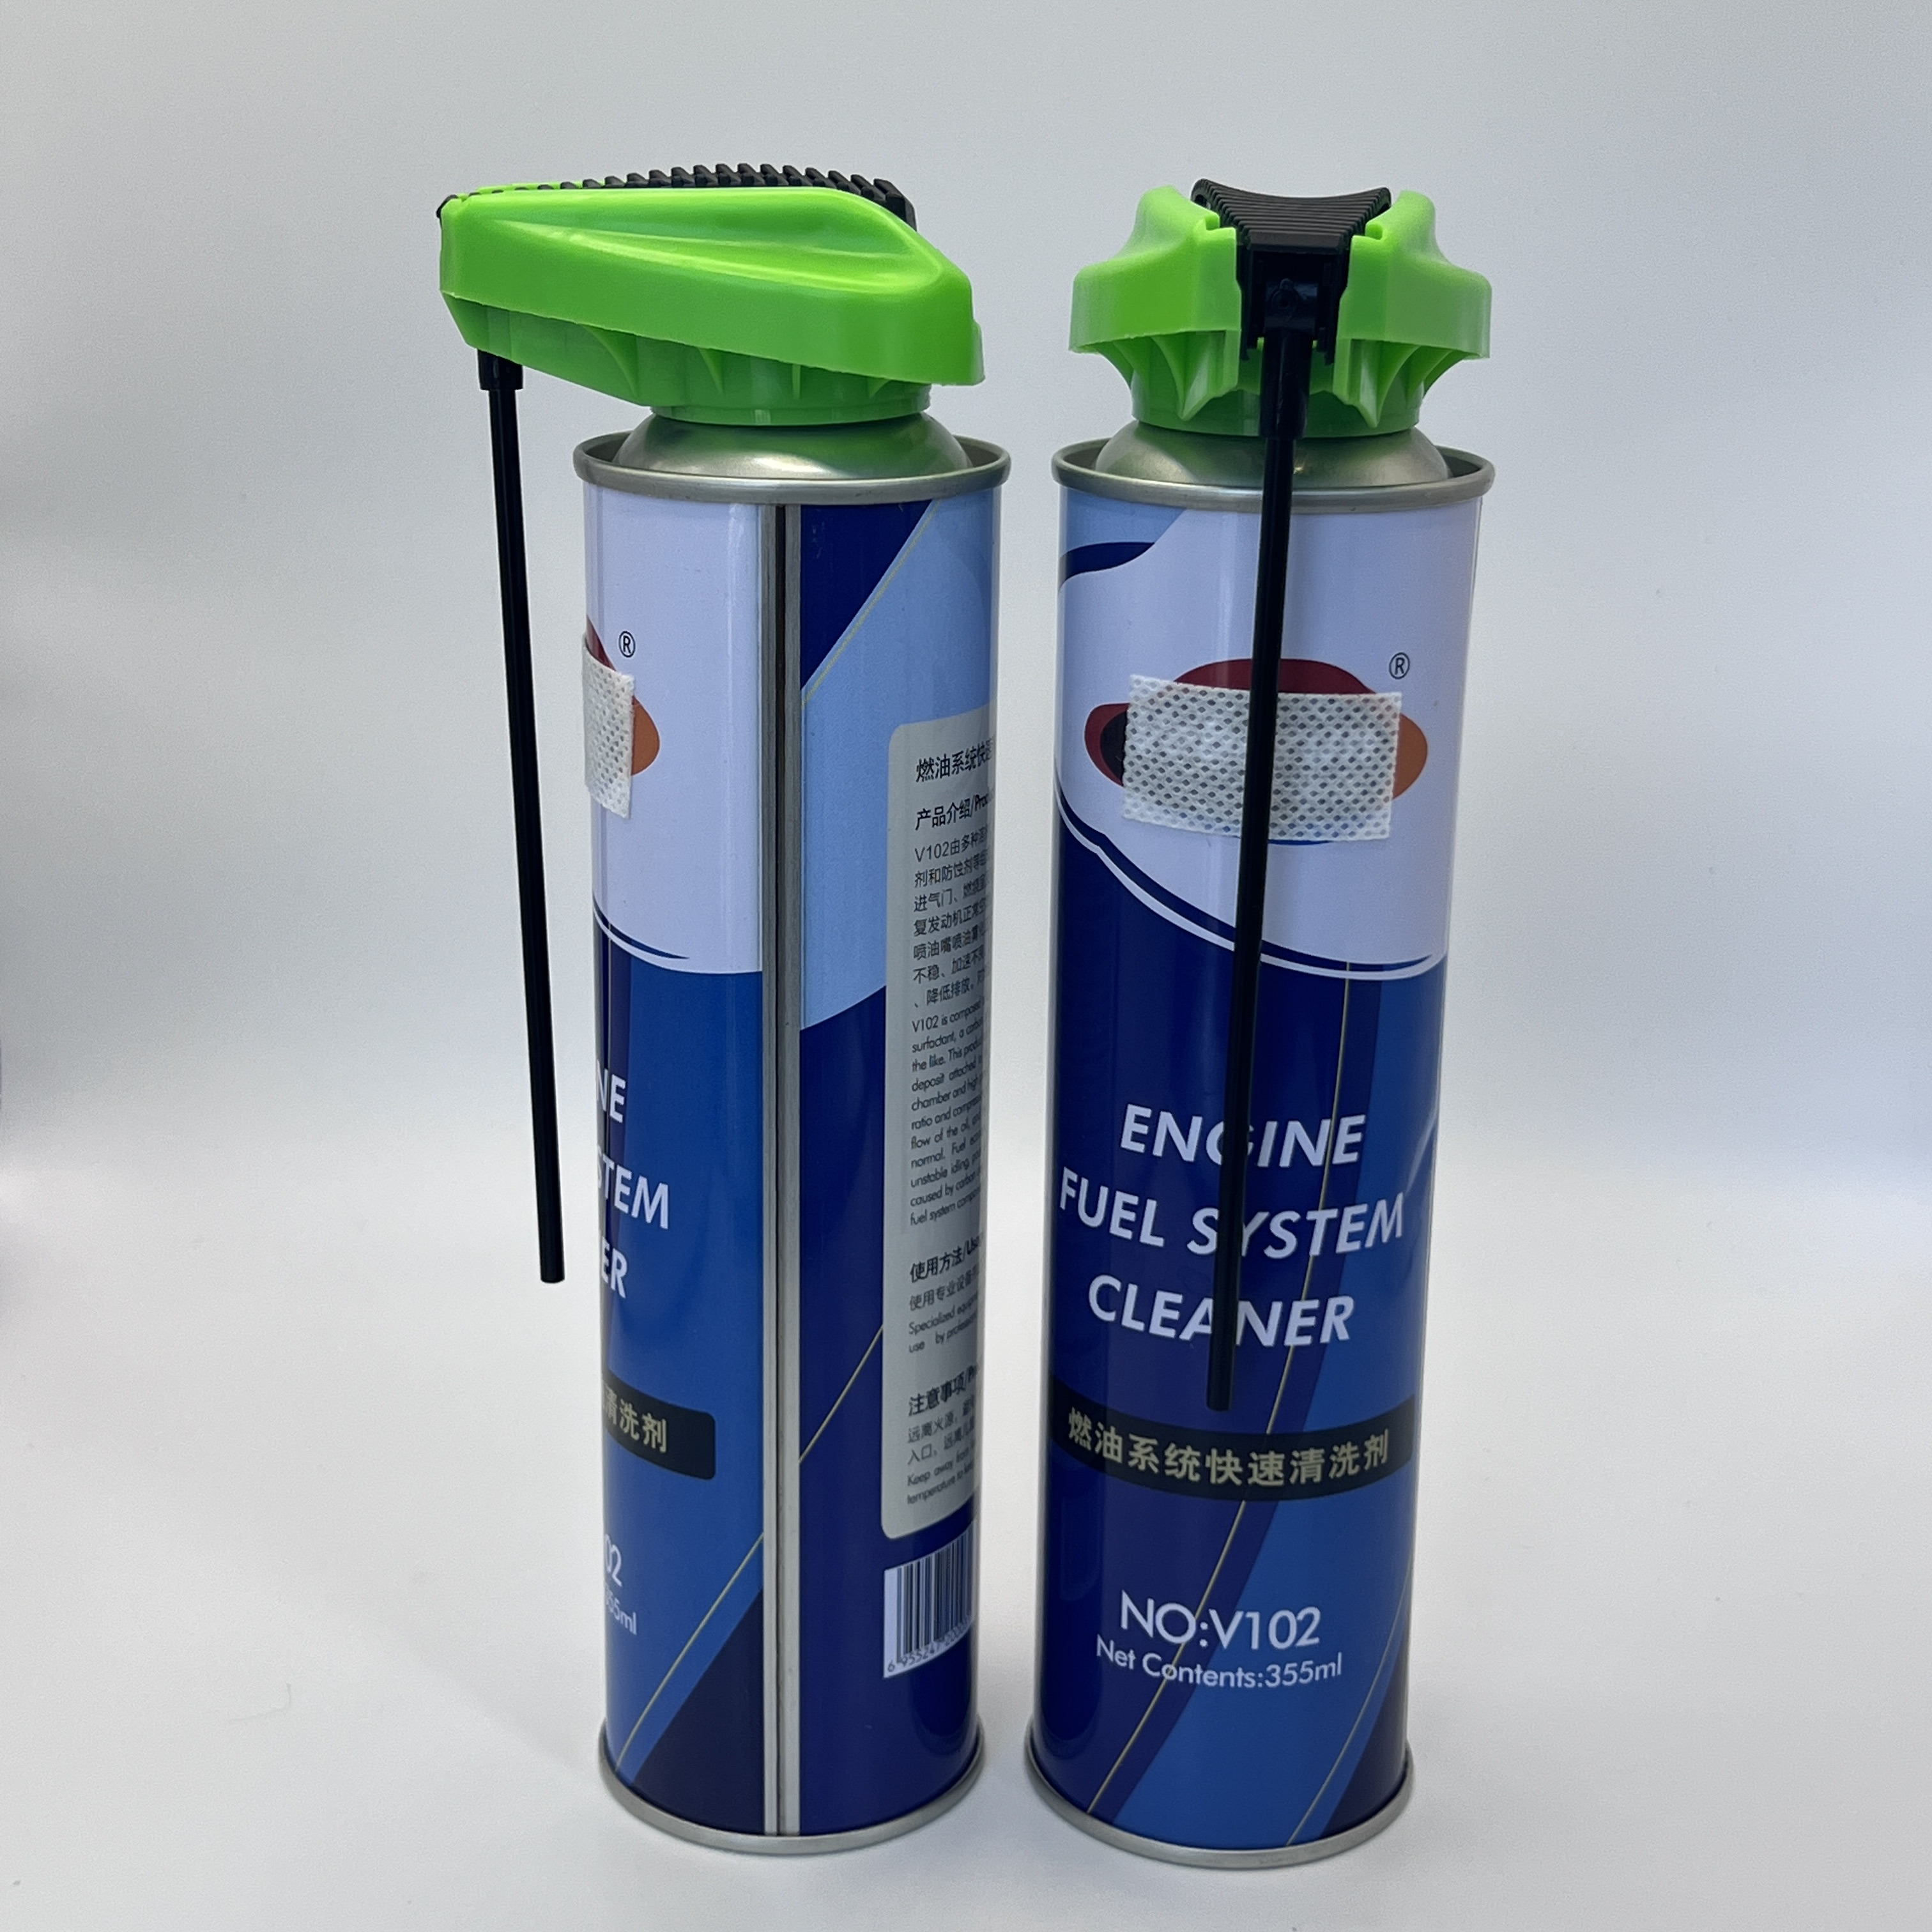 Kraftig aerosolspraydyse til industriel rengøring - holdbar og effektiv